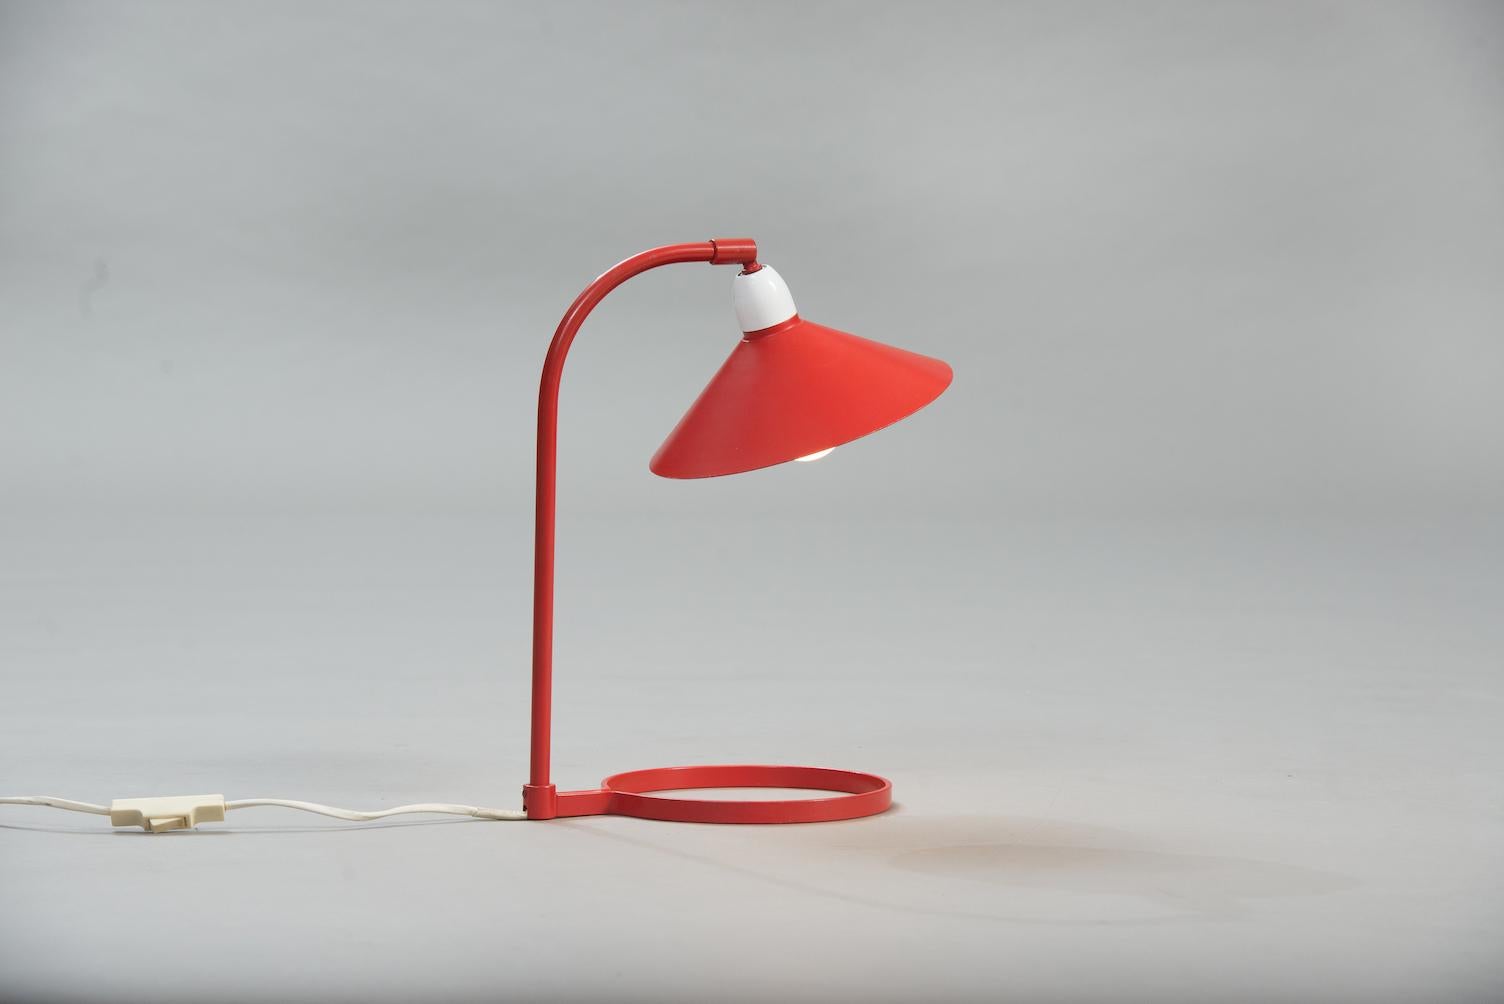 Mid-Century Modern desk lamp, red and white lacquered aluminium.
Measures: Diameter 20 cm. H. 35 cm, D. 24 cm.